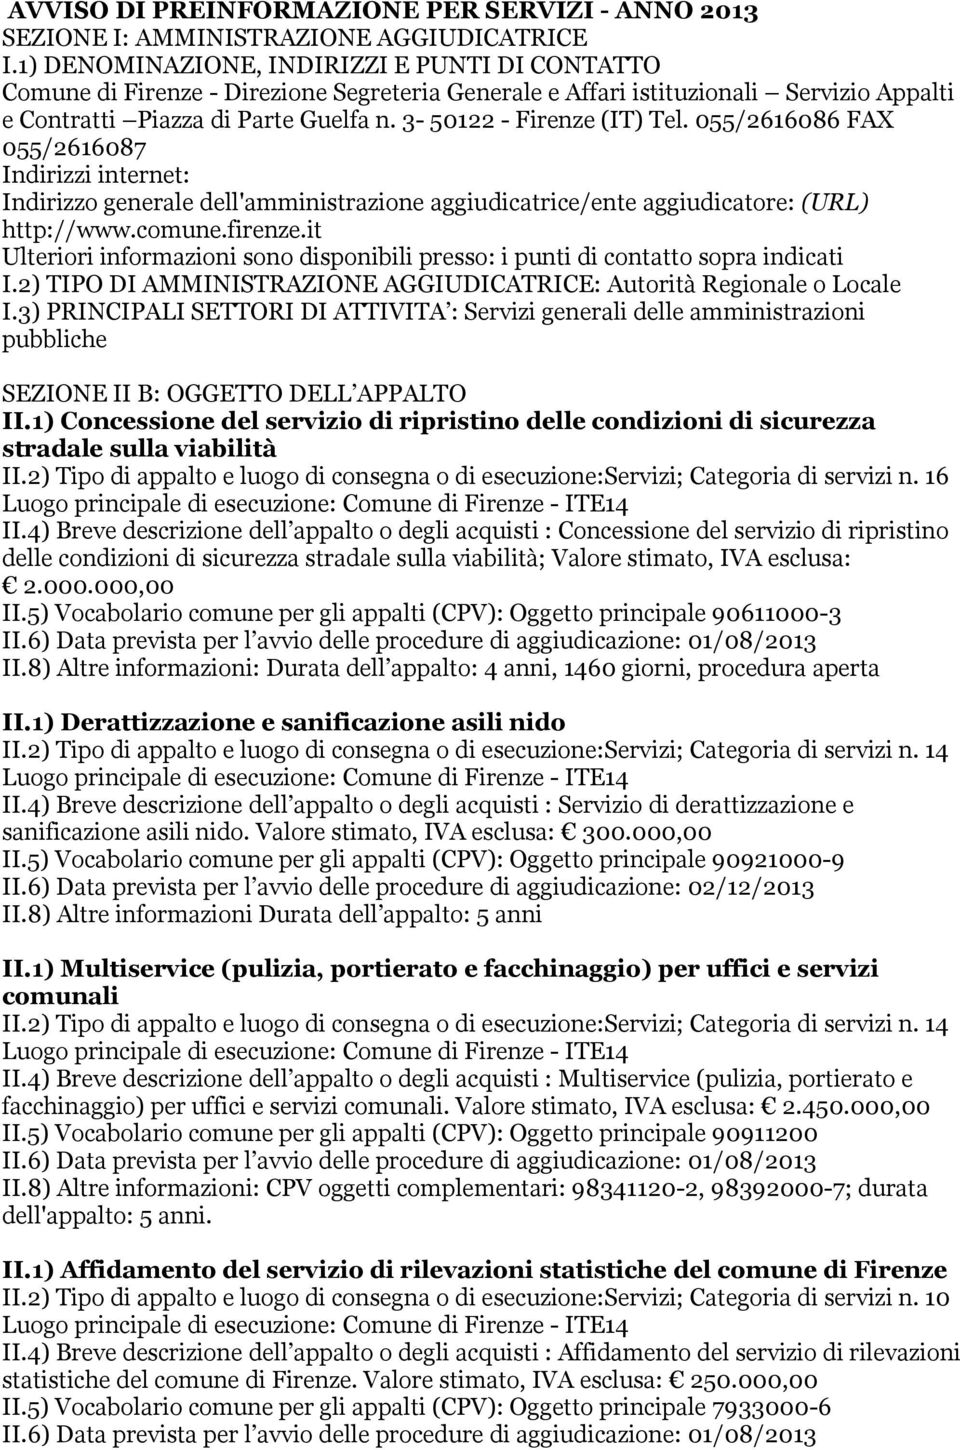 3-50122 - Firenze (IT) Tel. 055/2616086 FAX 055/2616087 Indirizzi internet: Indirizzo generale dell'amministrazione aggiudicatrice/ente aggiudicatore: (URL) http://www.comune.firenze.